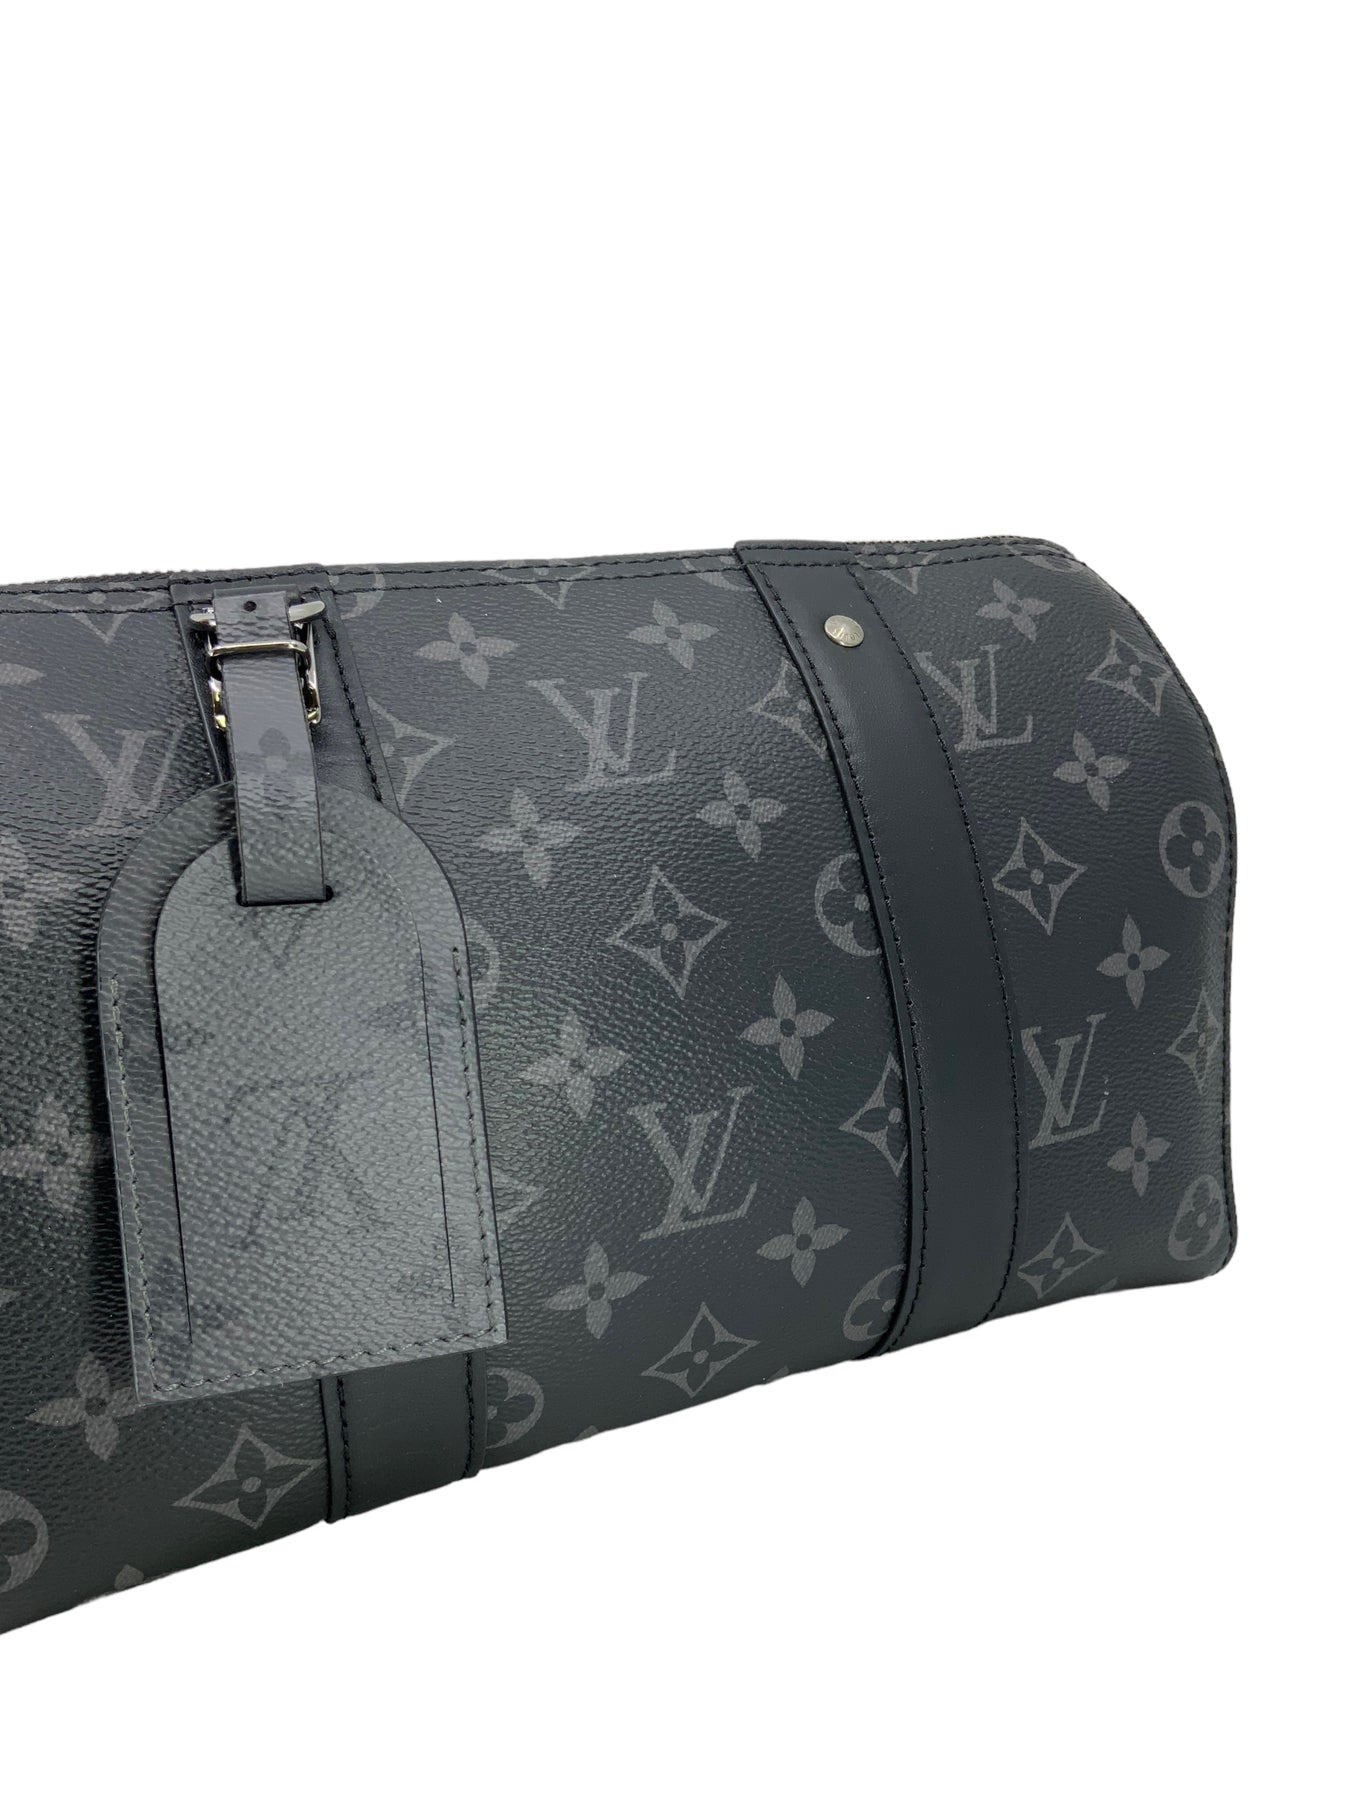 Louis Vuitton City Keepall Bag Monogram Eclipse Canvas Black 2339141